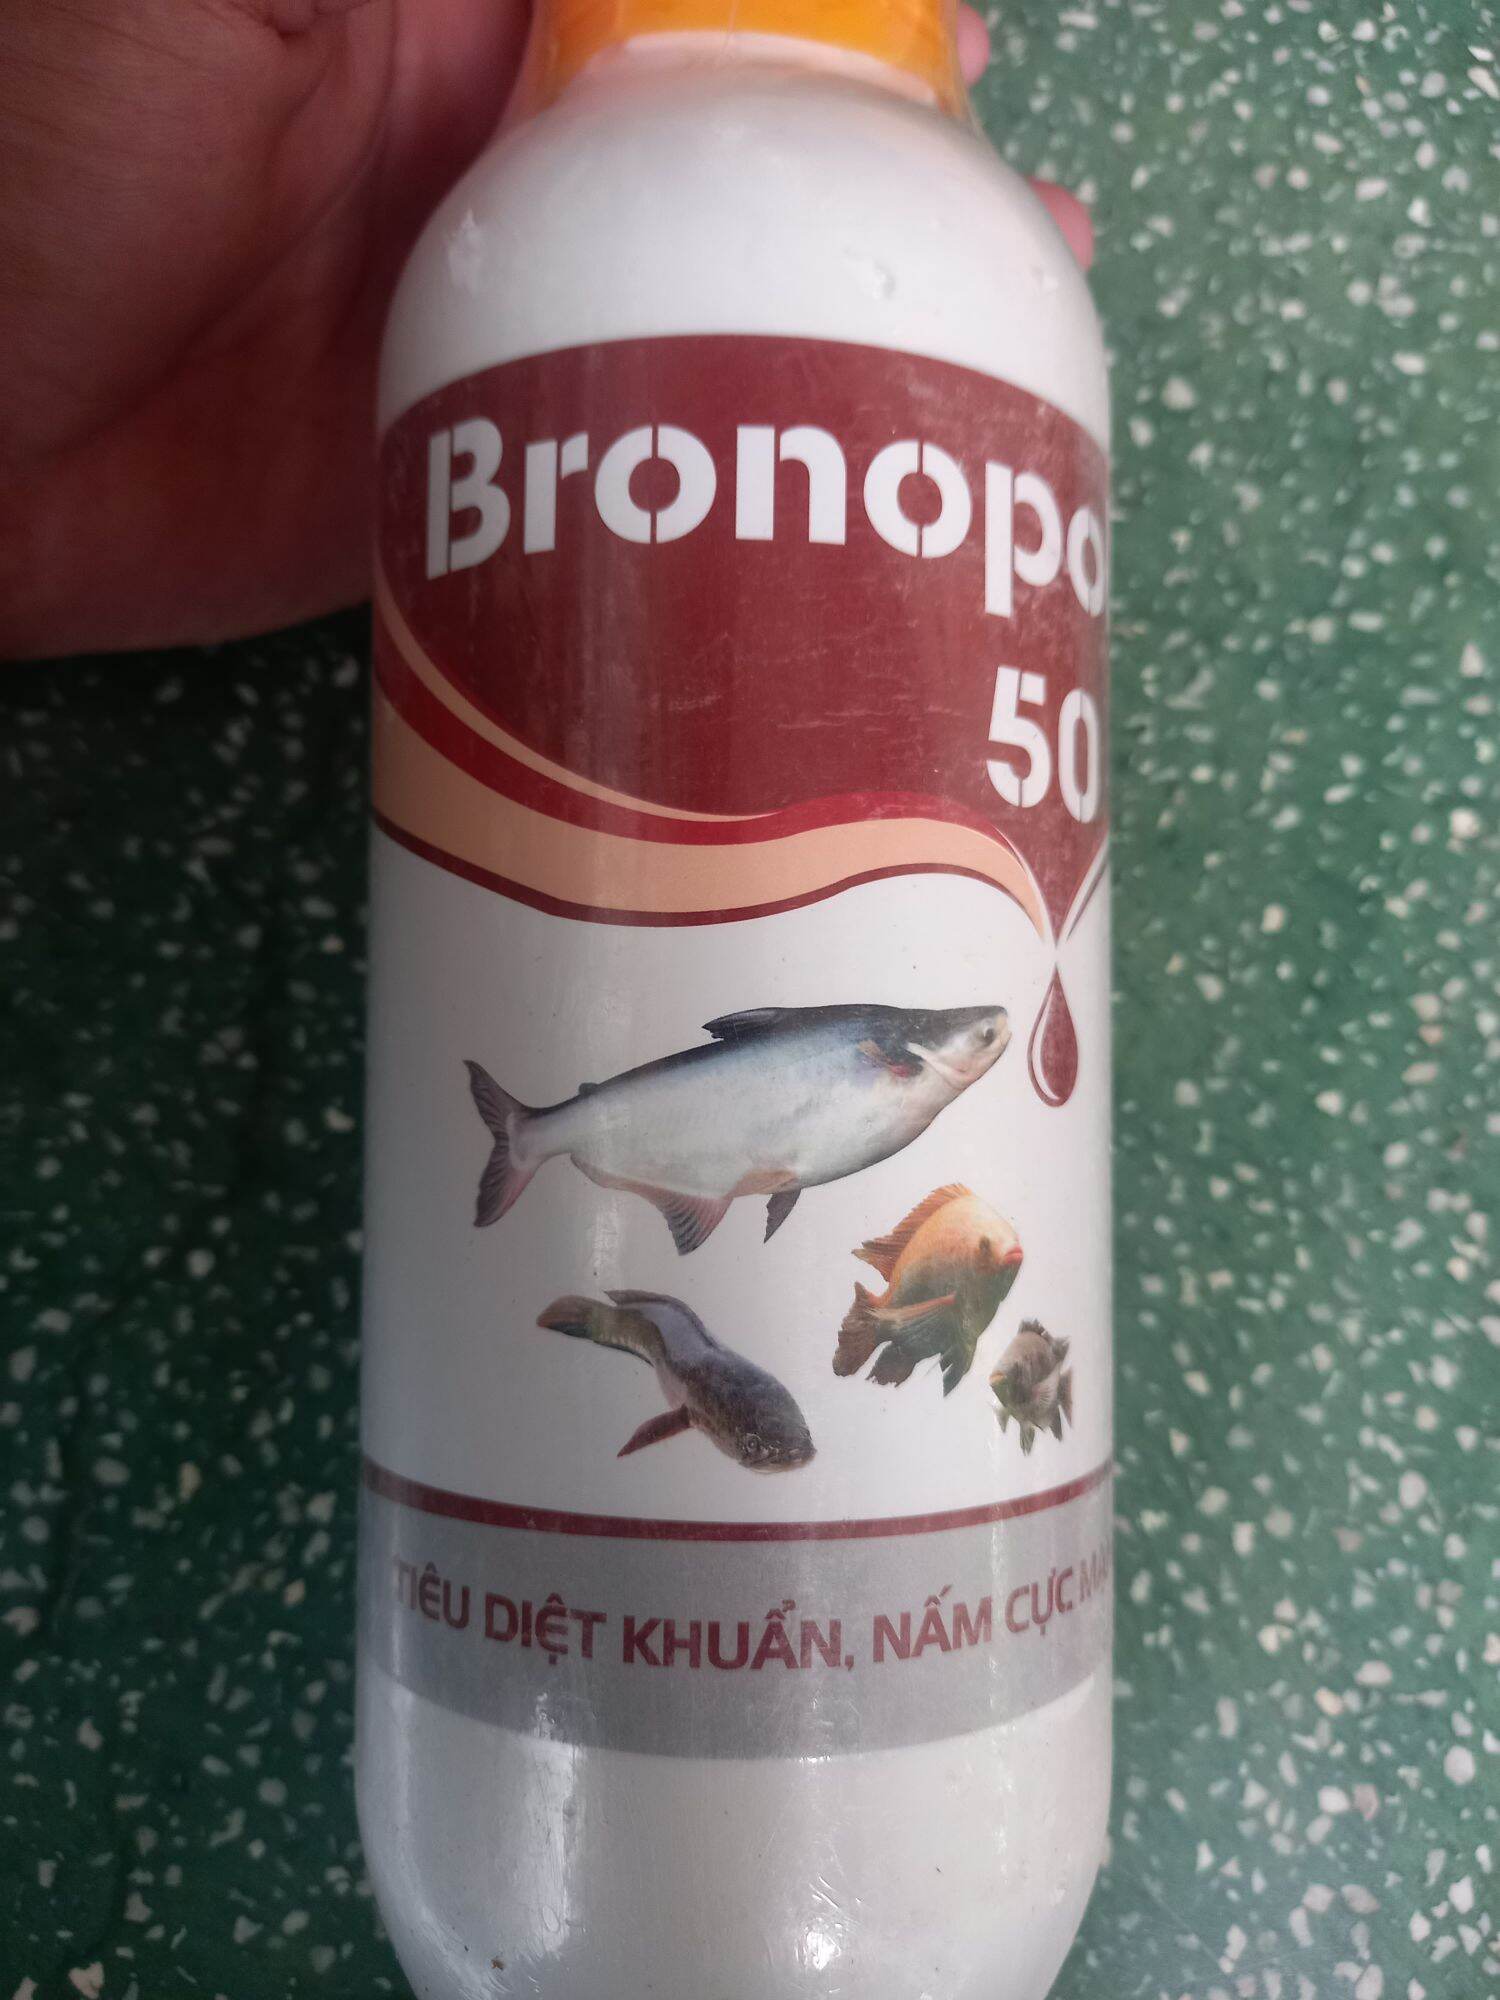 Bronopol 50 Tieu diêt nhanh nấm, vi khuẩn gây bệnh